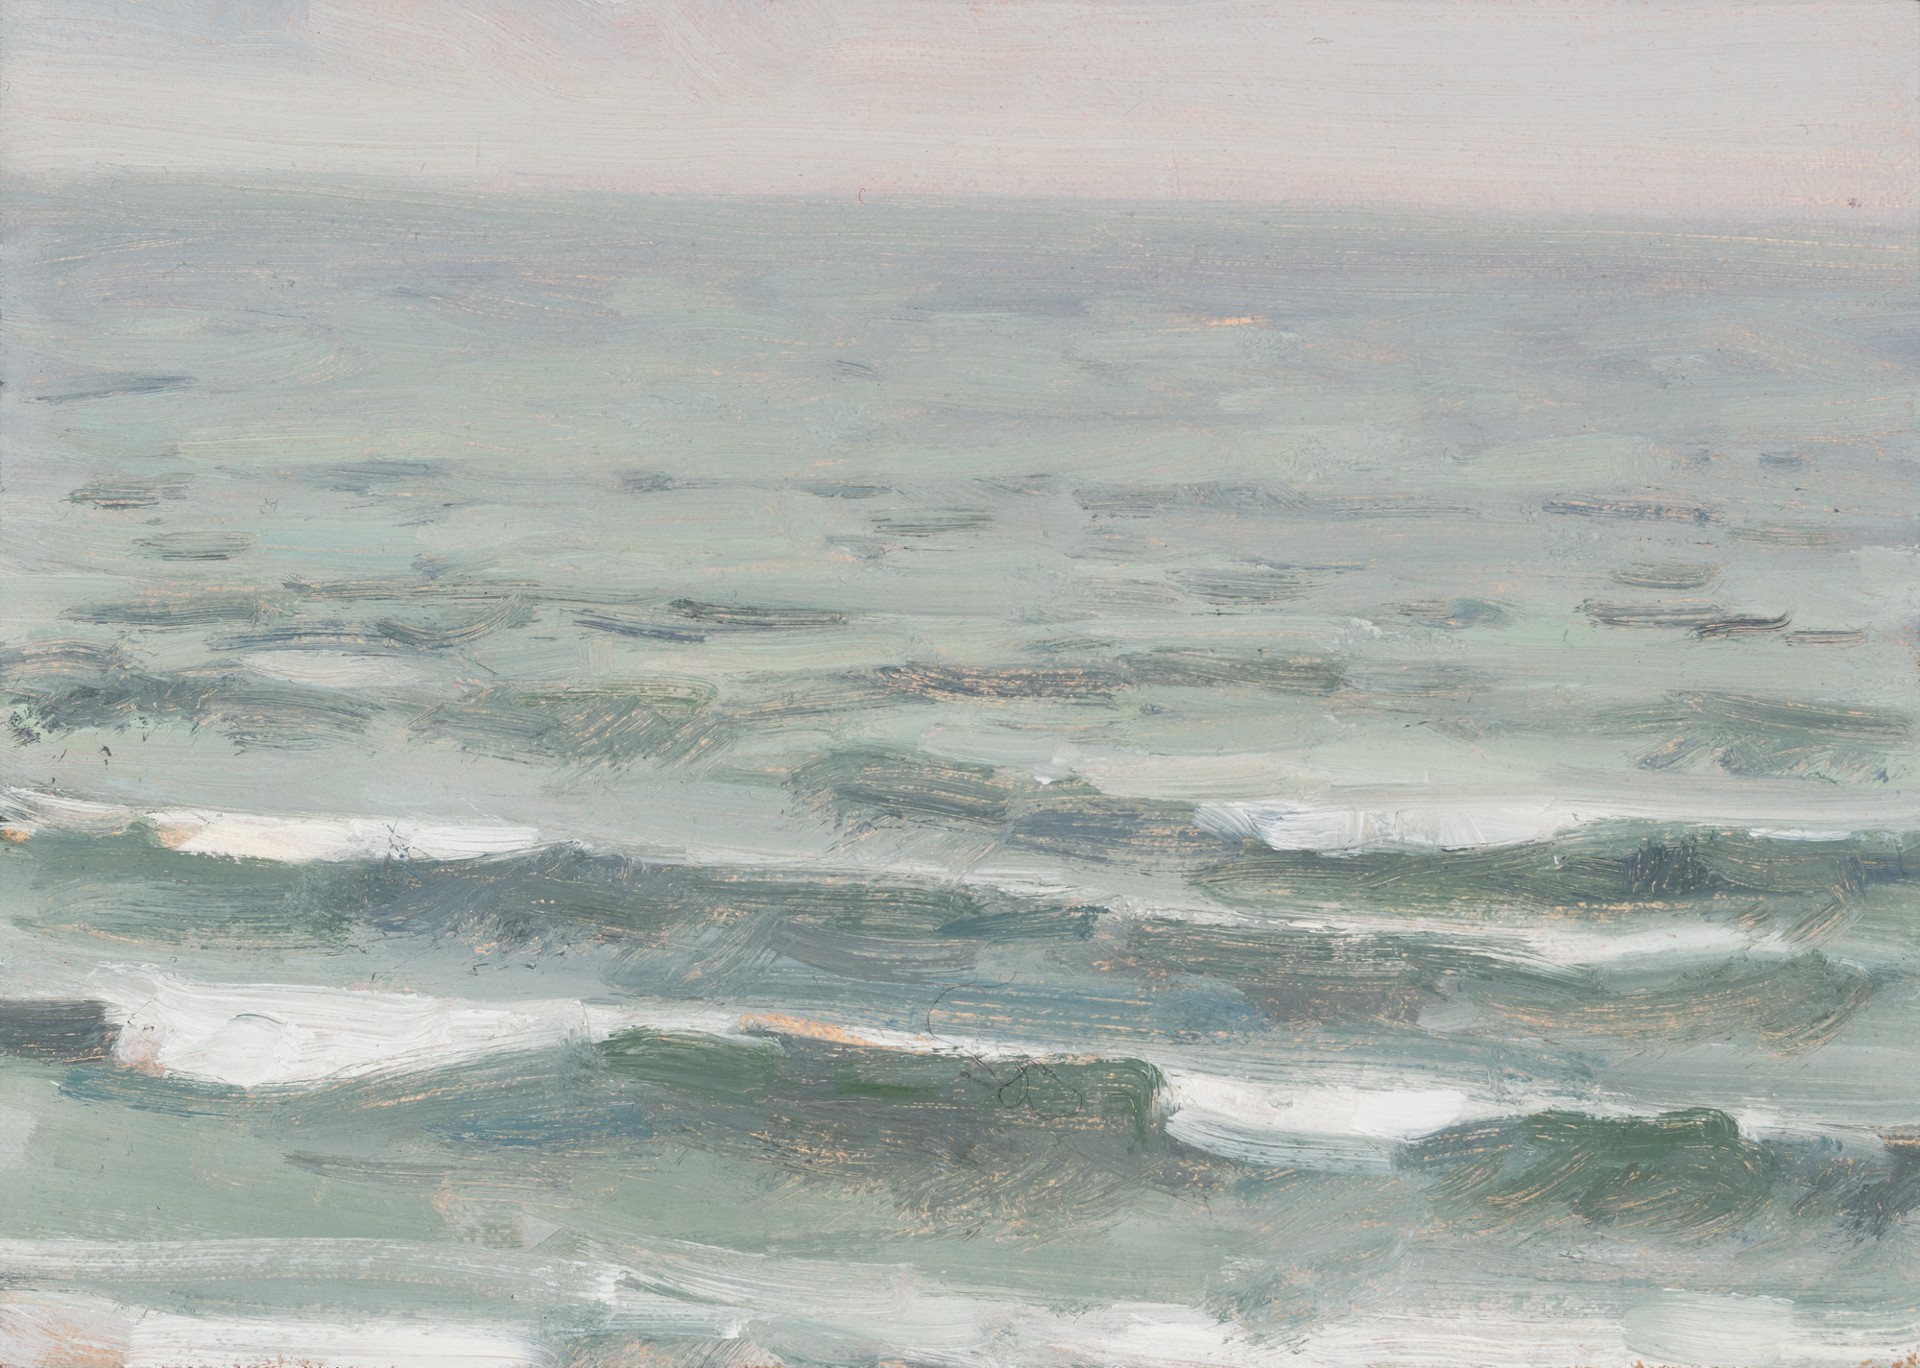 Waves, January by Diana Horowitz